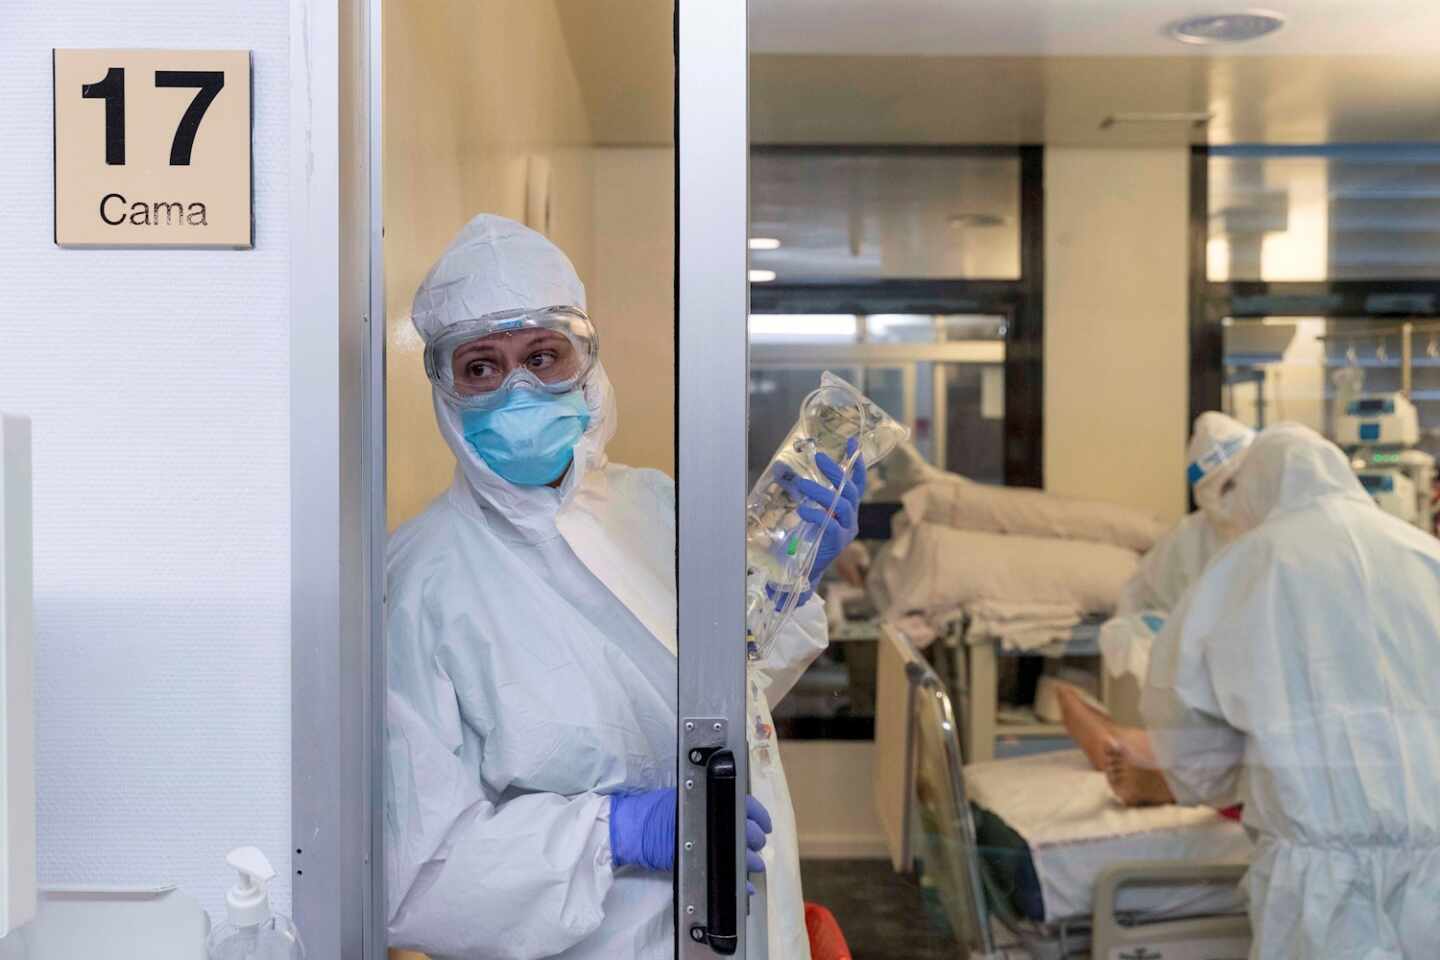 Los médicos temen un rebrote del virus: "No estamos preparados"